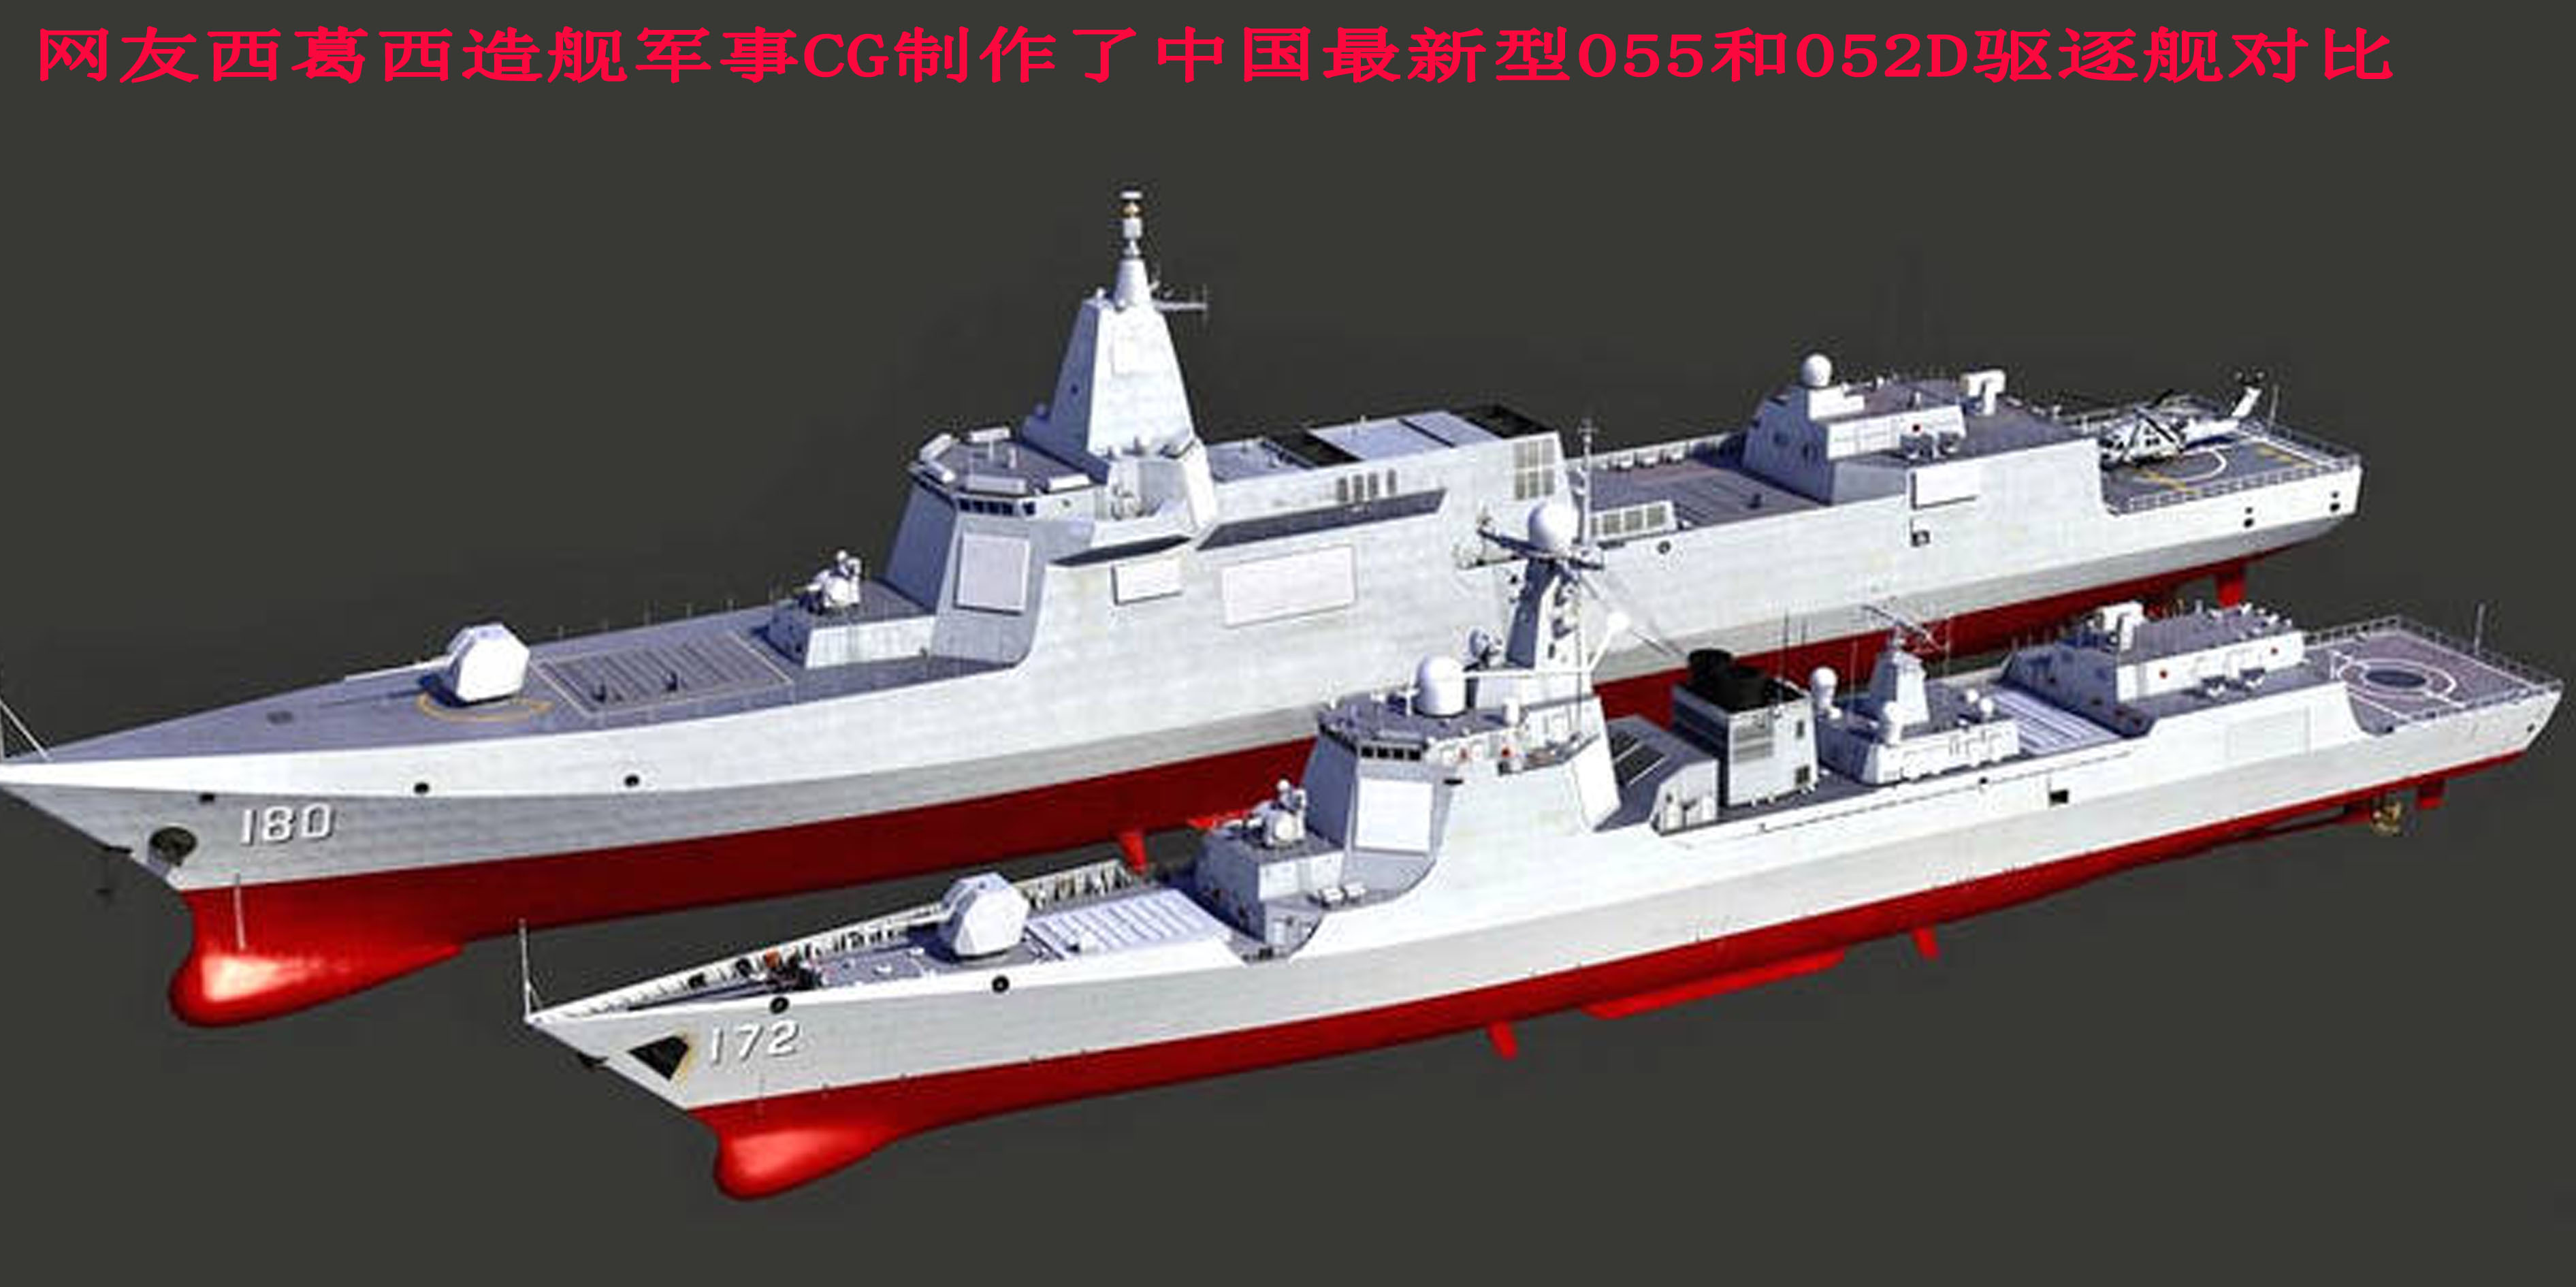 055驱逐舰对比052D全面升级 海军舰造持续发力美、日还能HOLD住吗_搜狐军事_搜狐网